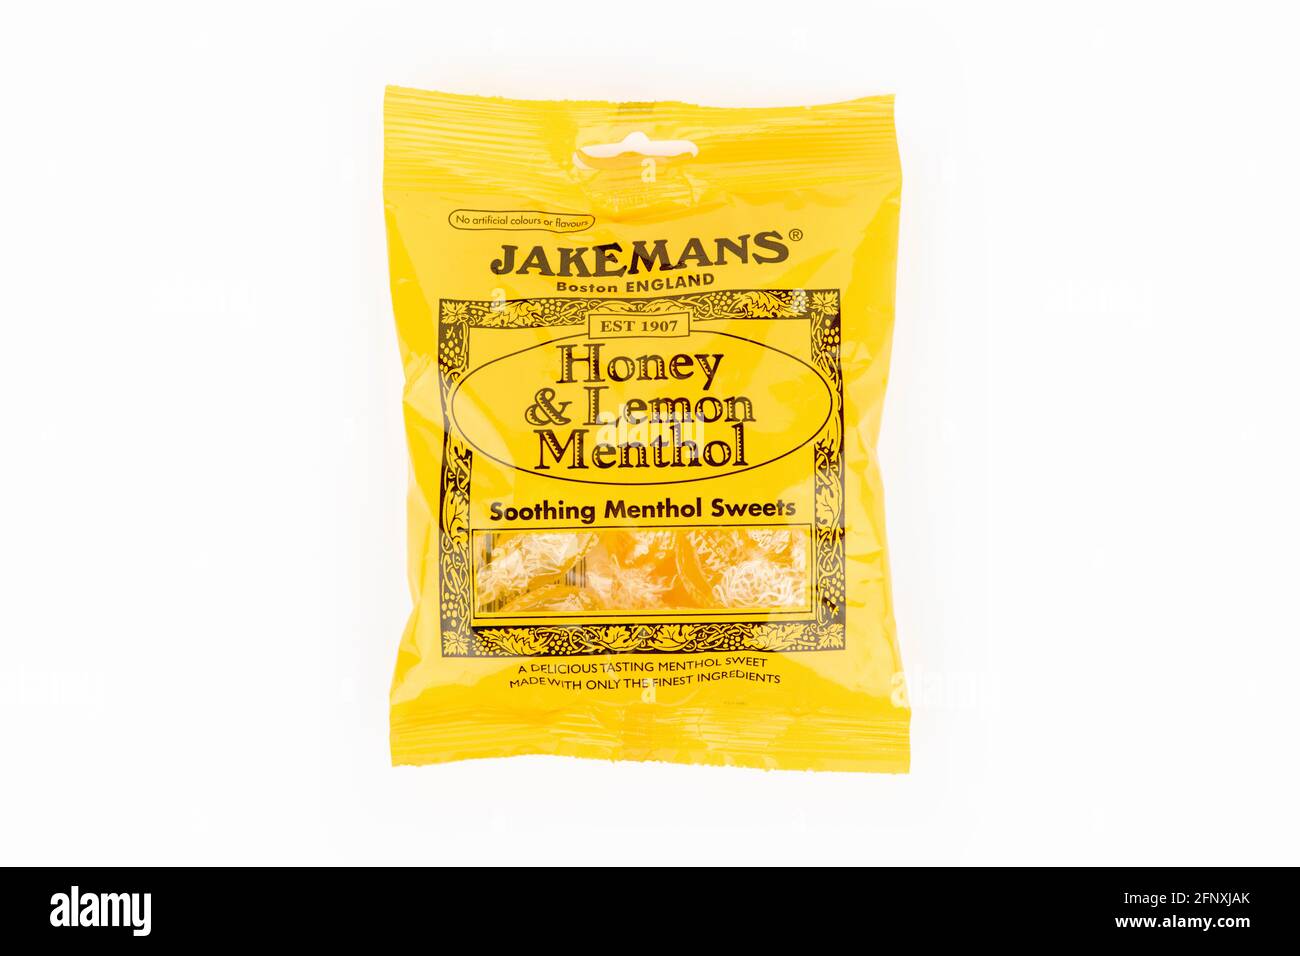 Un paquete de miel Jakemans y dulces de mentol limón tiraron sobre un fondo blanco. Foto de stock